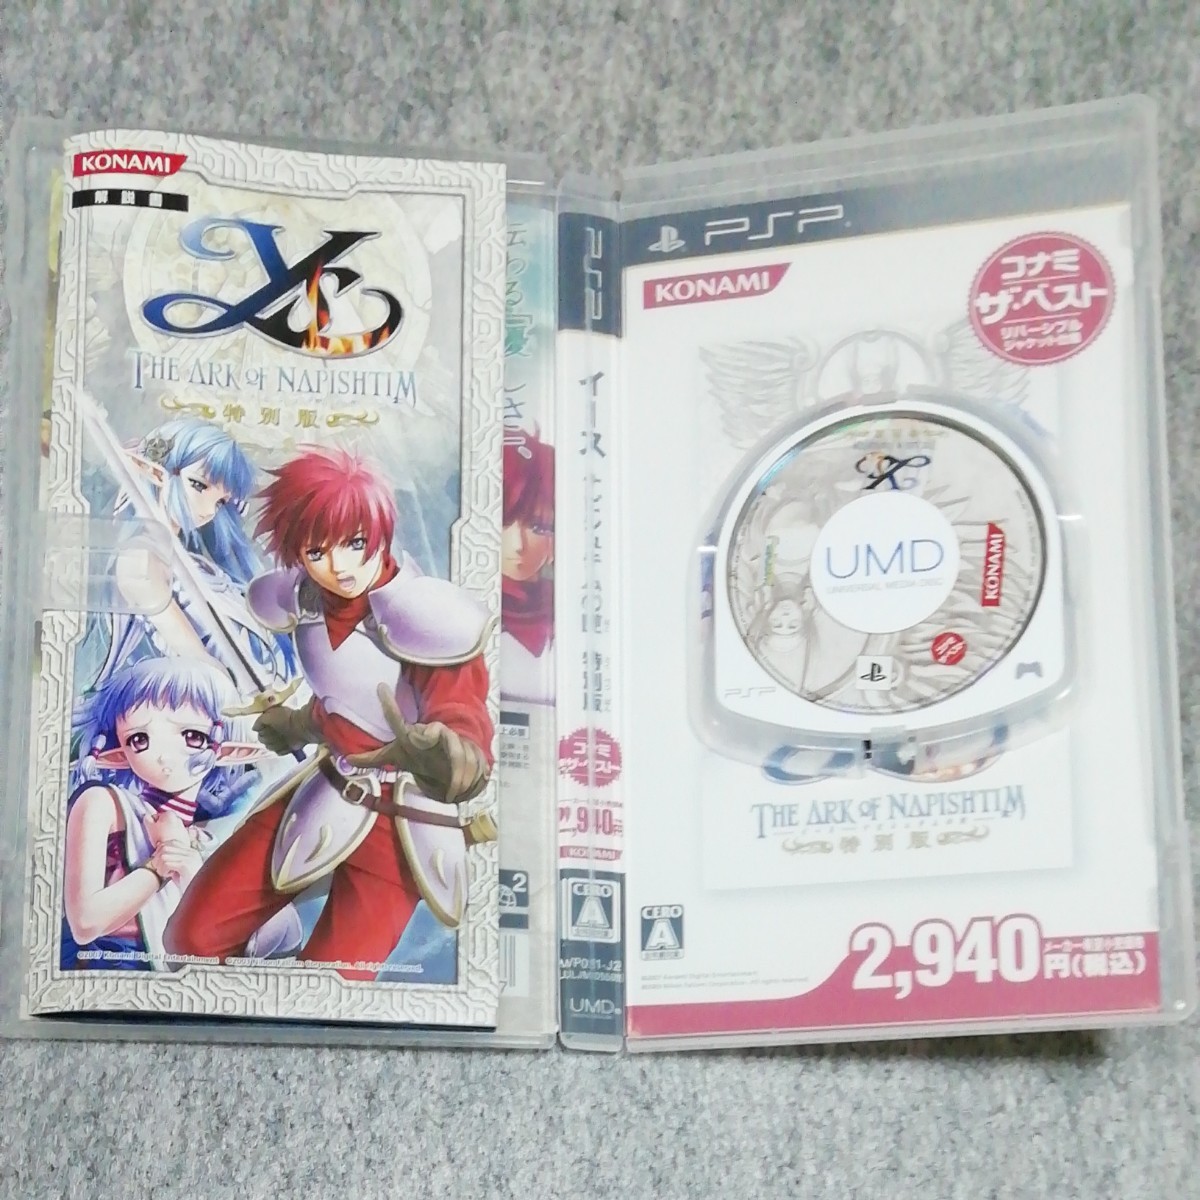 【PSP】イース -ナピシュテムの匣- 特別版 コナミ・ザ・ベスト(イース6) ＆ 公式ガイド(PS2版)セット